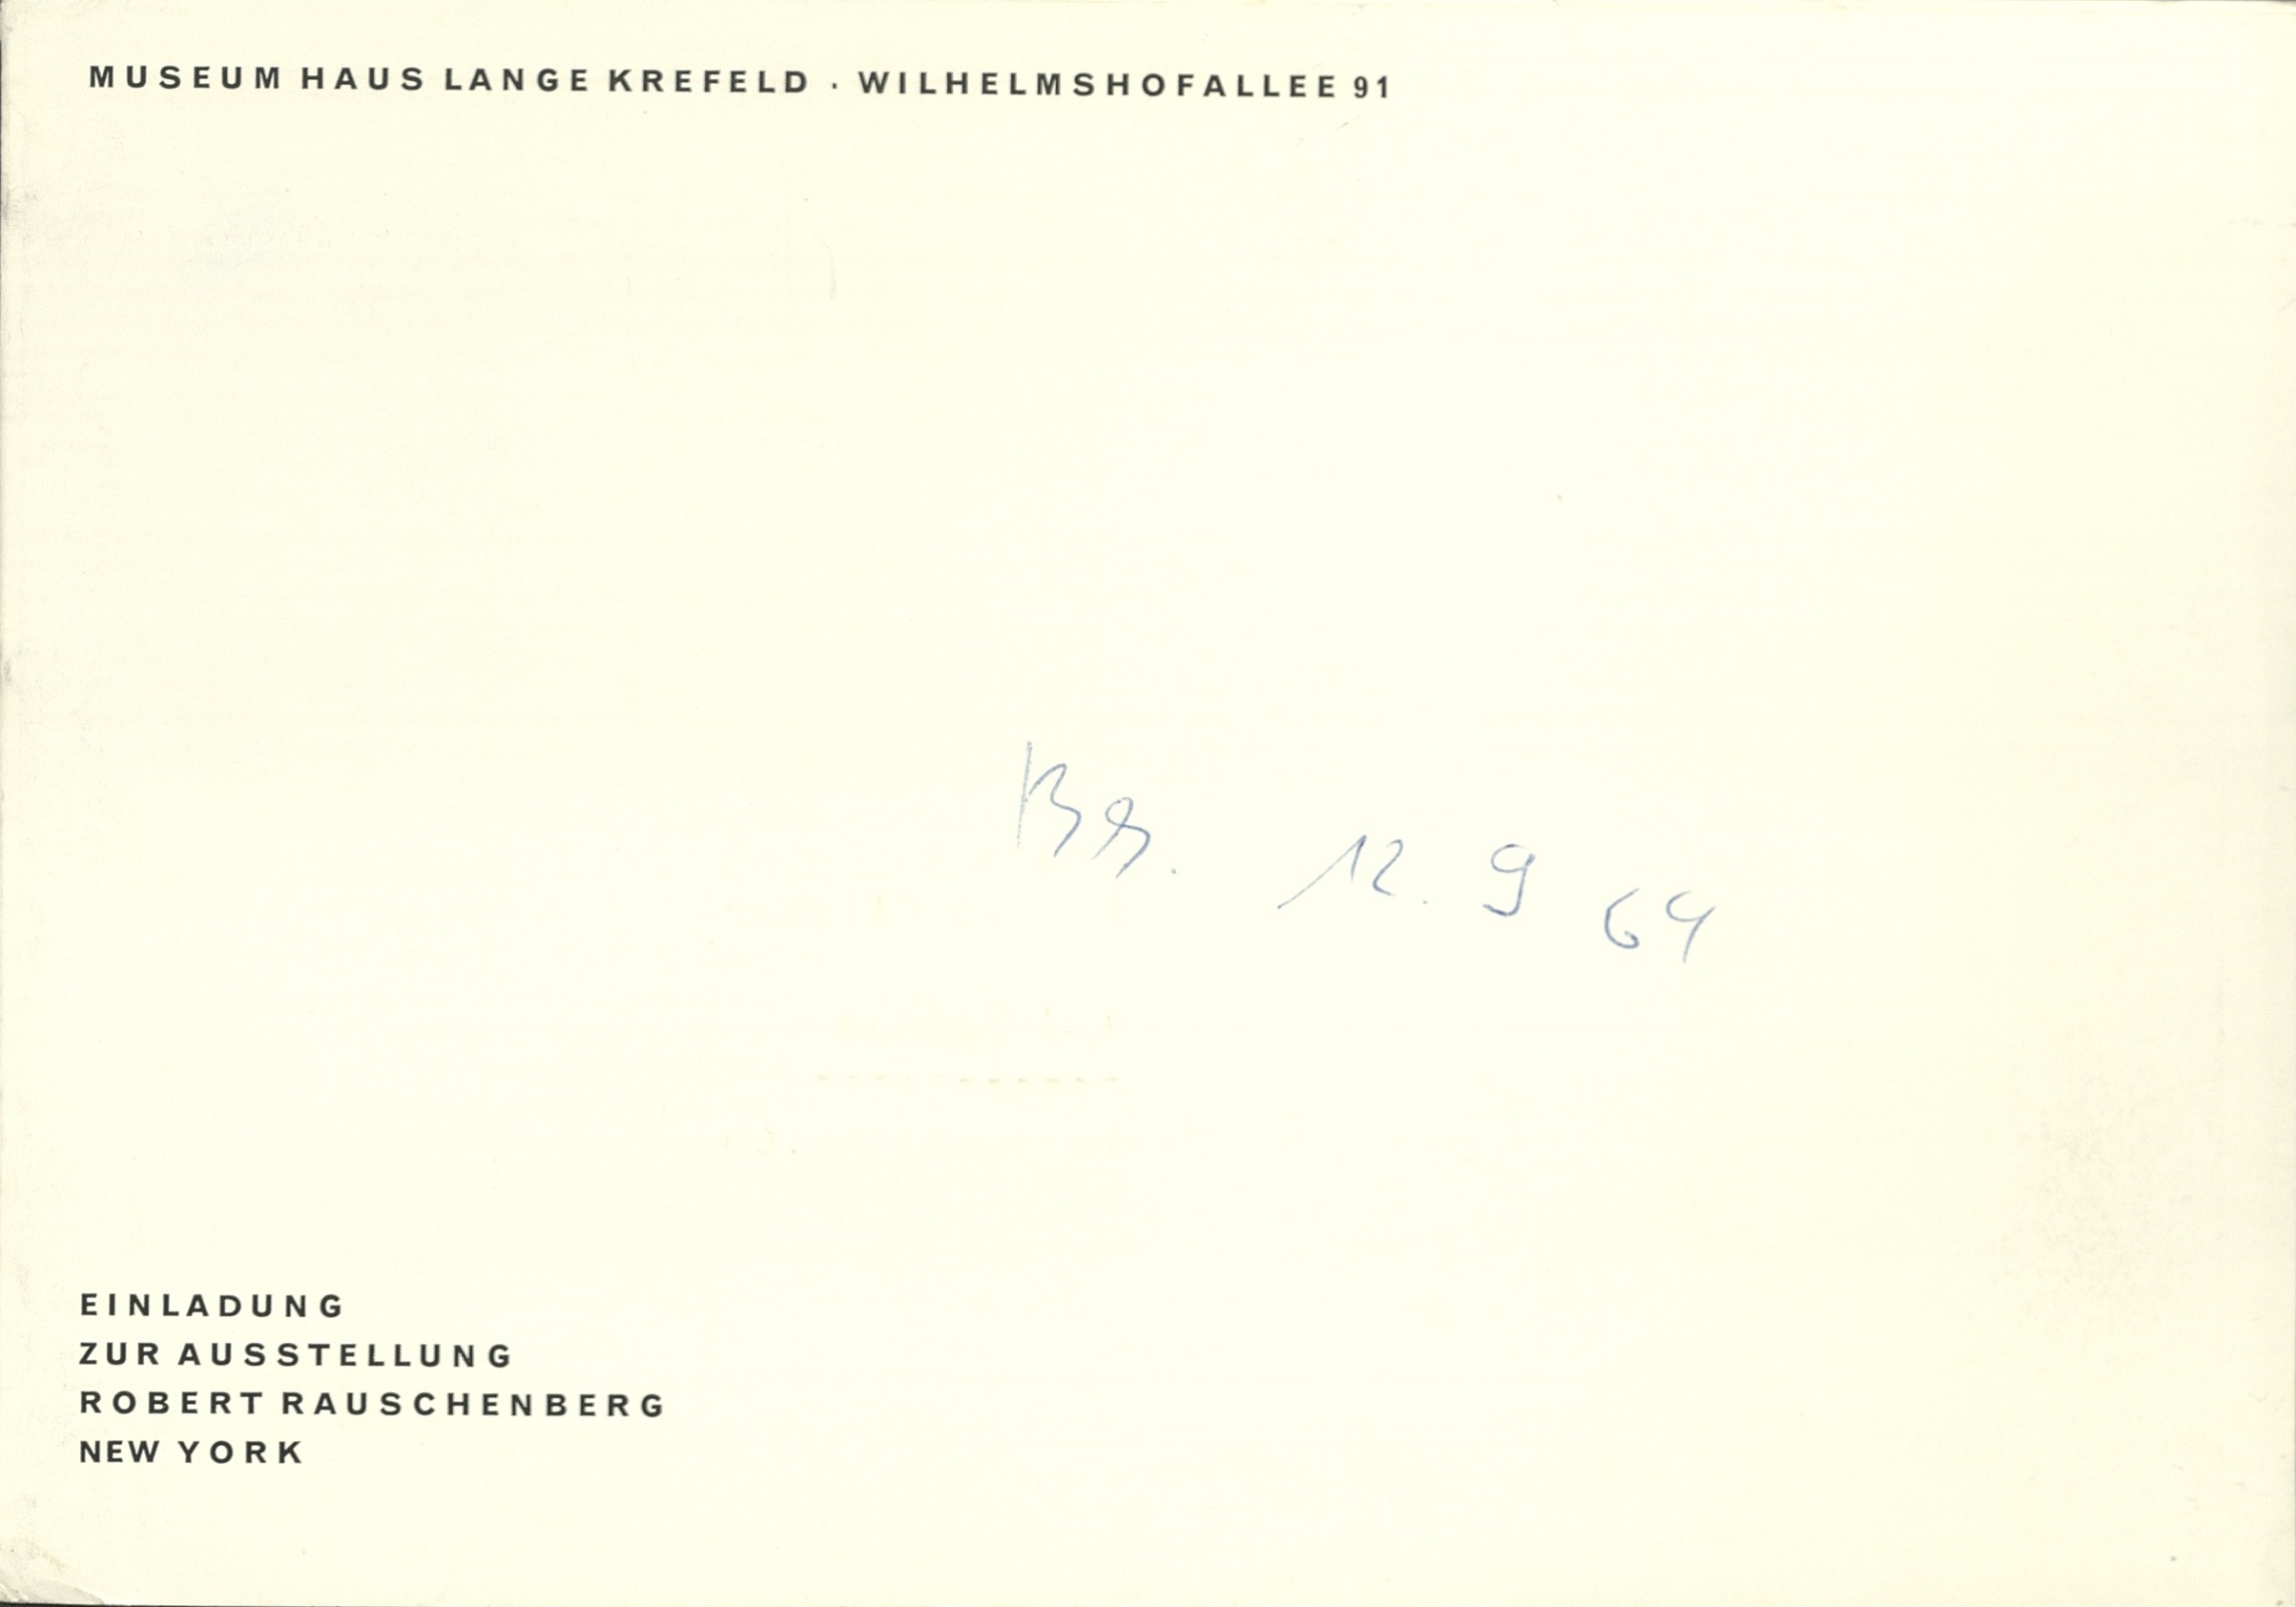 Robert Rauschenberg, Museum Haus Lange Krefeld 1964 (INVITATION); Archiv der Avantgarden, Staatliche Kunstsammlungen Dresden © VG Bild-Kunst, Bonn